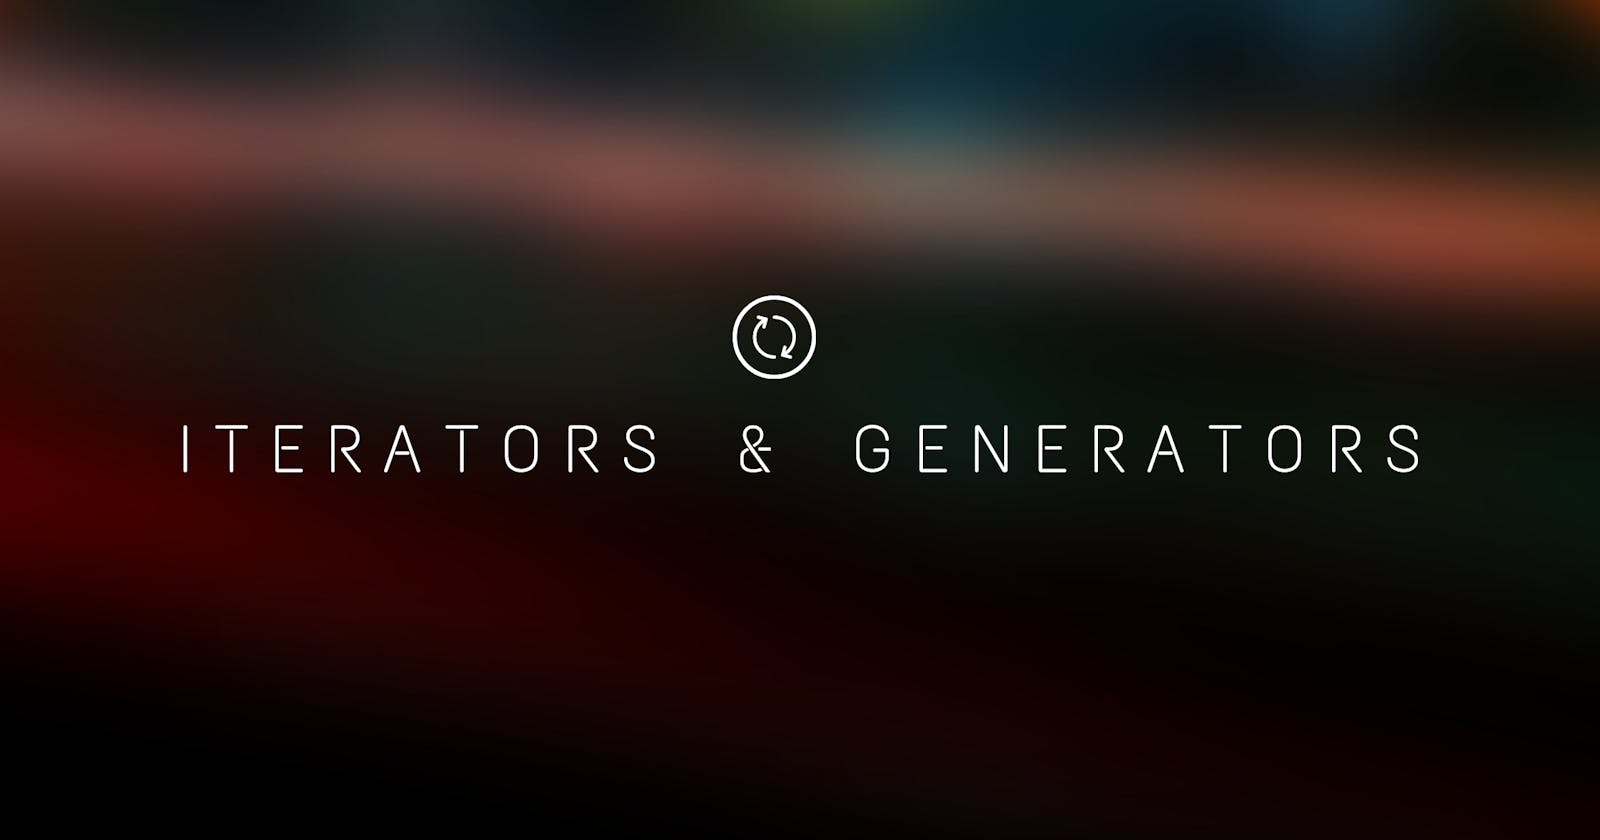 Let's Understand Iterators & Generators.